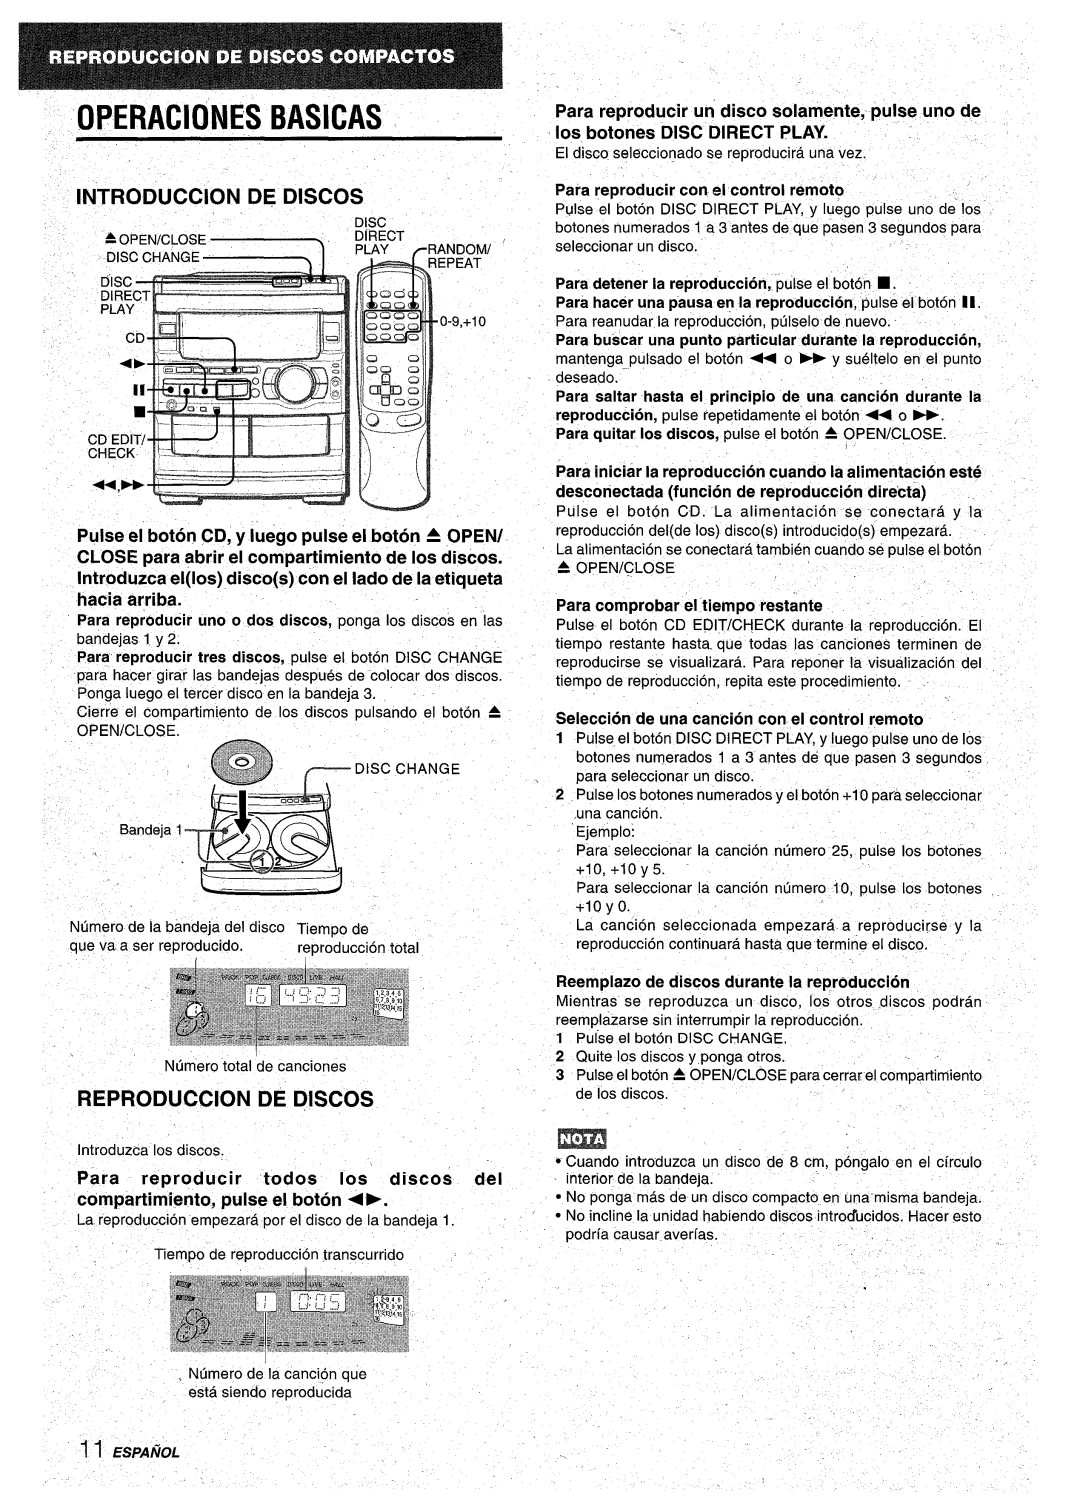 Aiwa CX-NA92 manual Operaciones Basicas, j INTRODUCTION DE DISCOS, Reproduction De Discos 